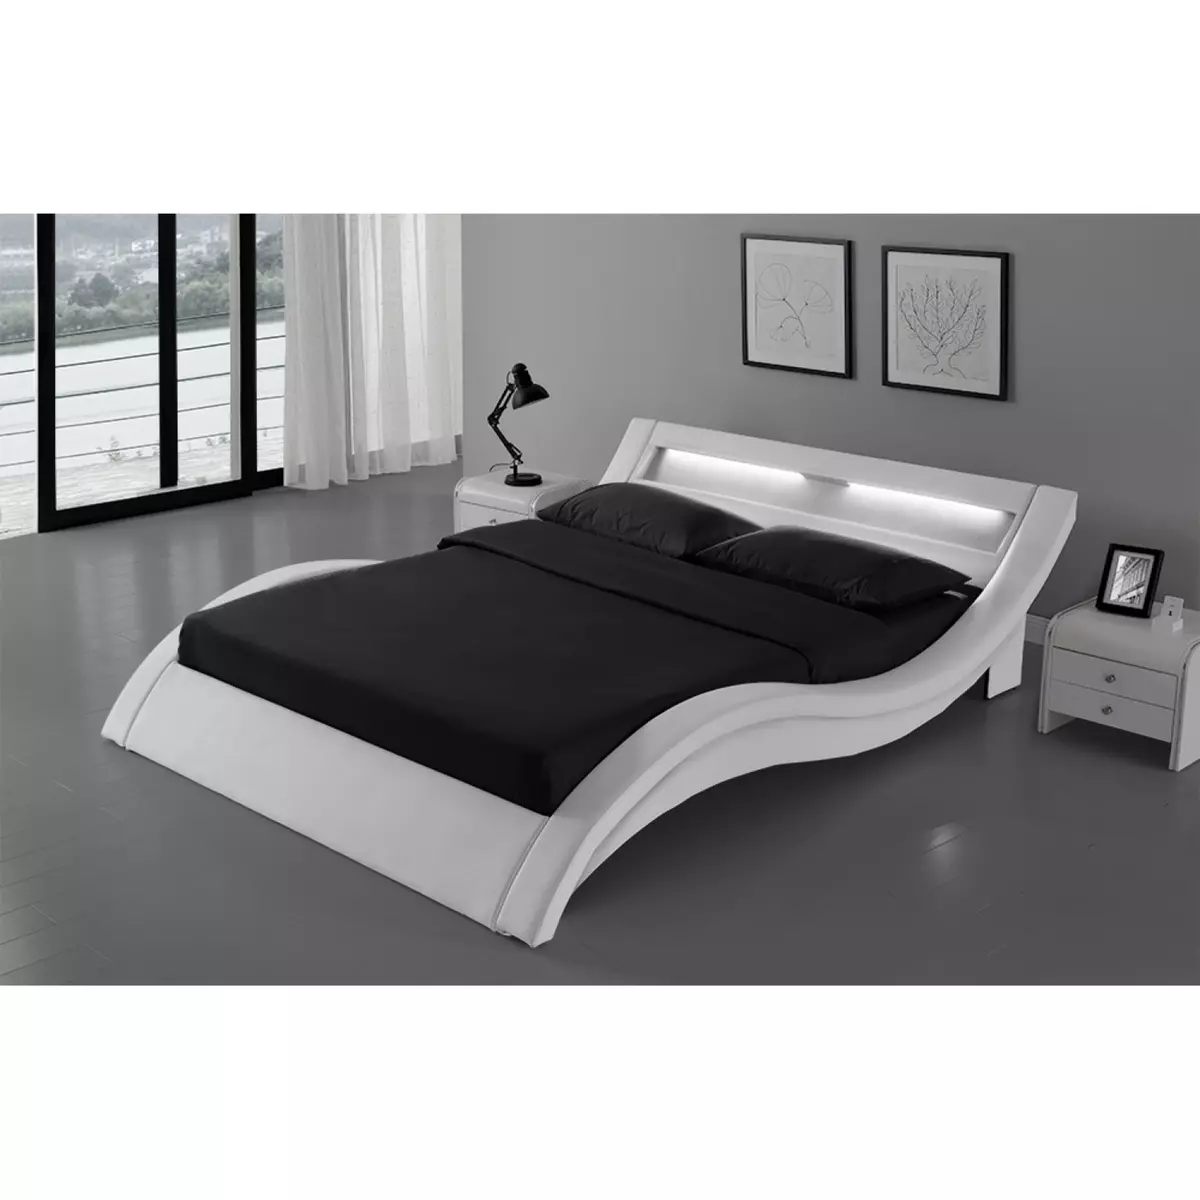 CONCEPT USINE Cadre de lit en PU blanc avec LED intégrées 160x200cm PADDINGTON